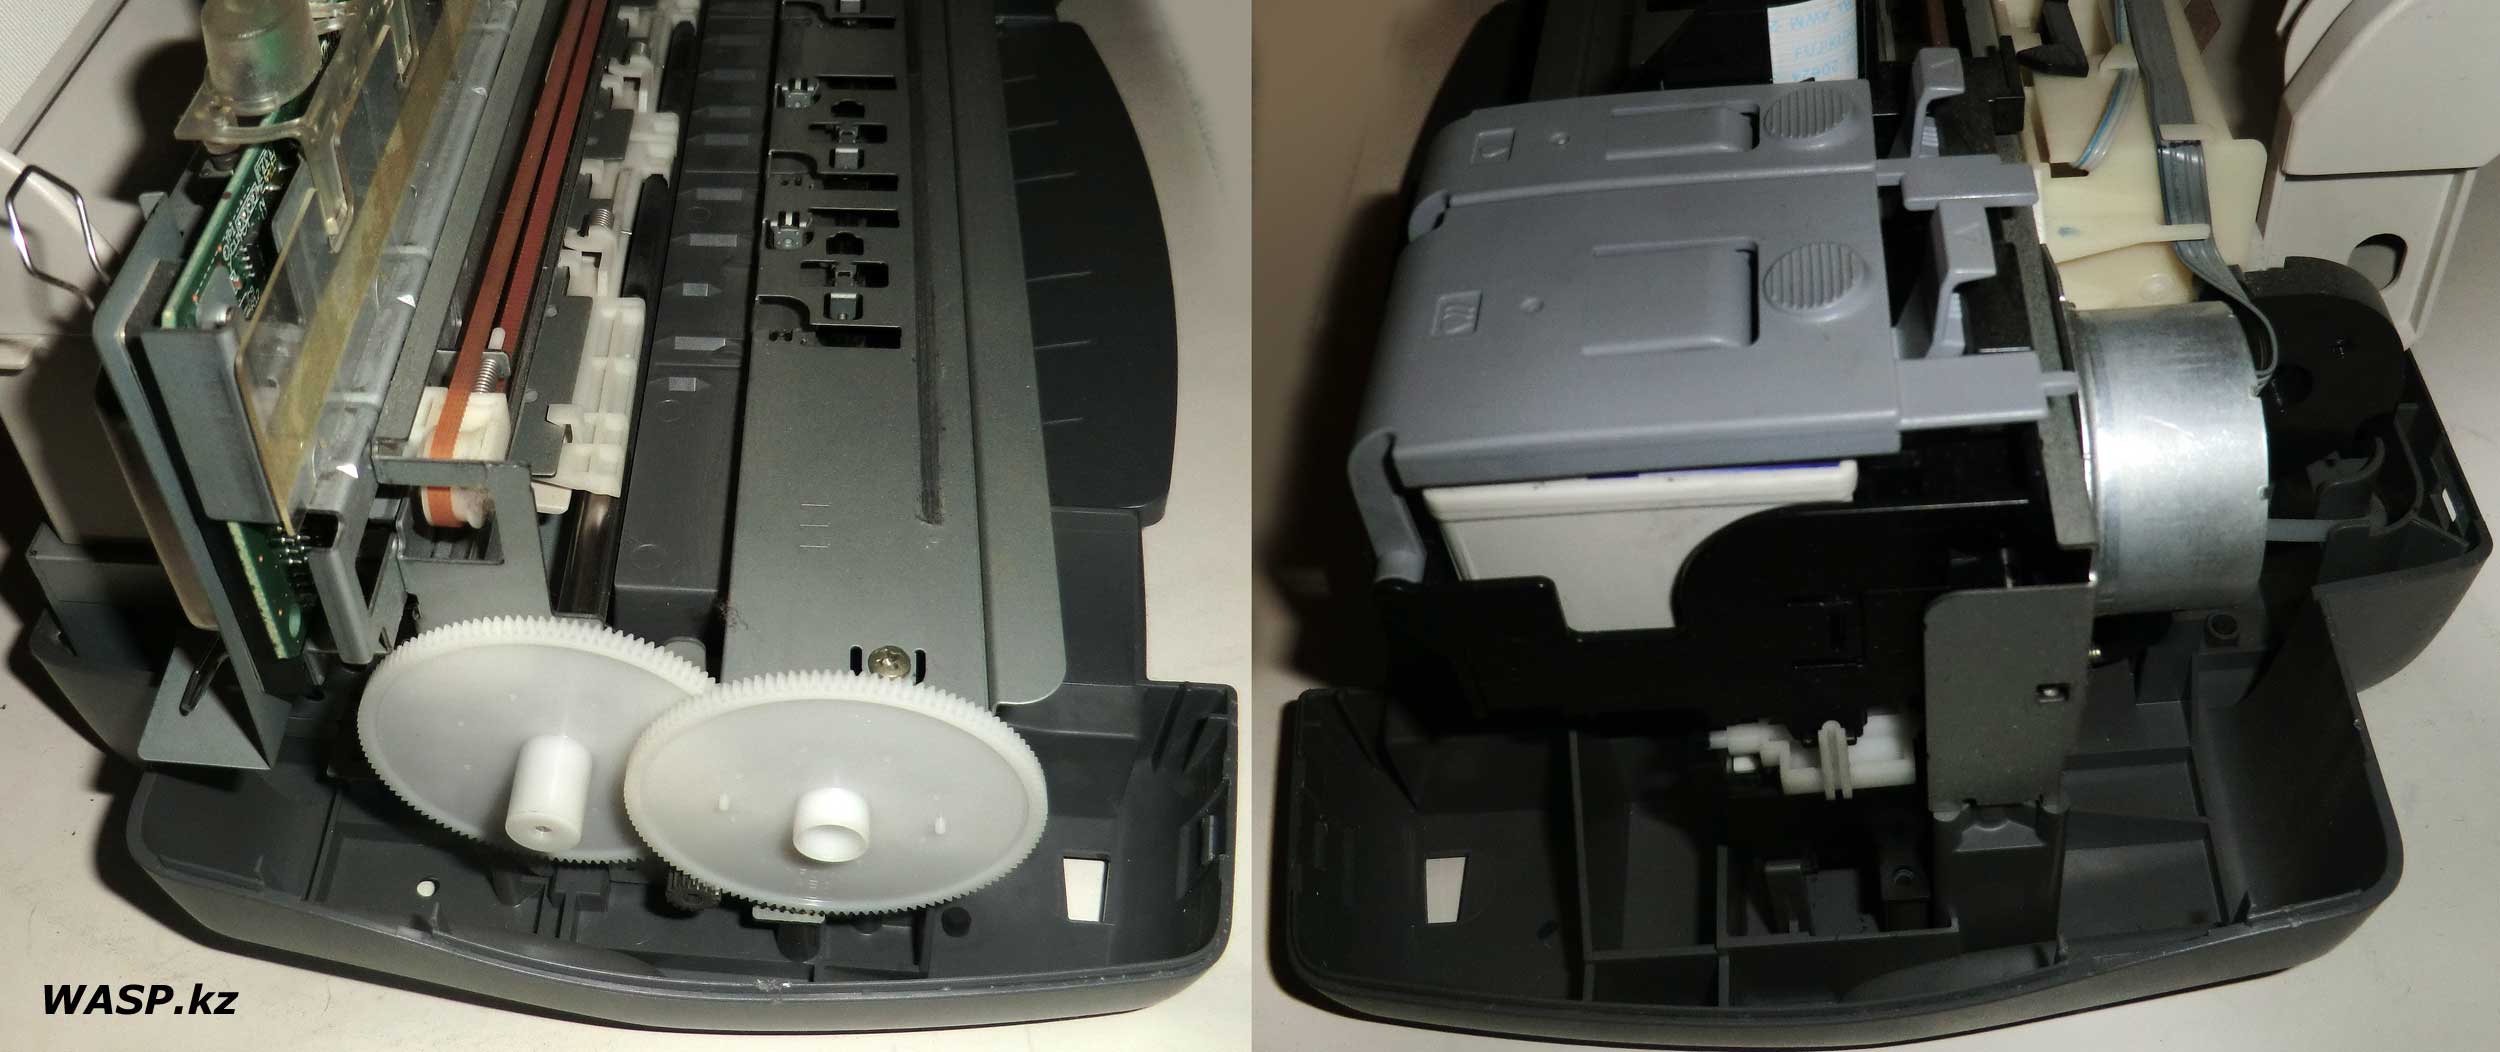 Epson Stylus C20SX стройство механики принтера, как почистить